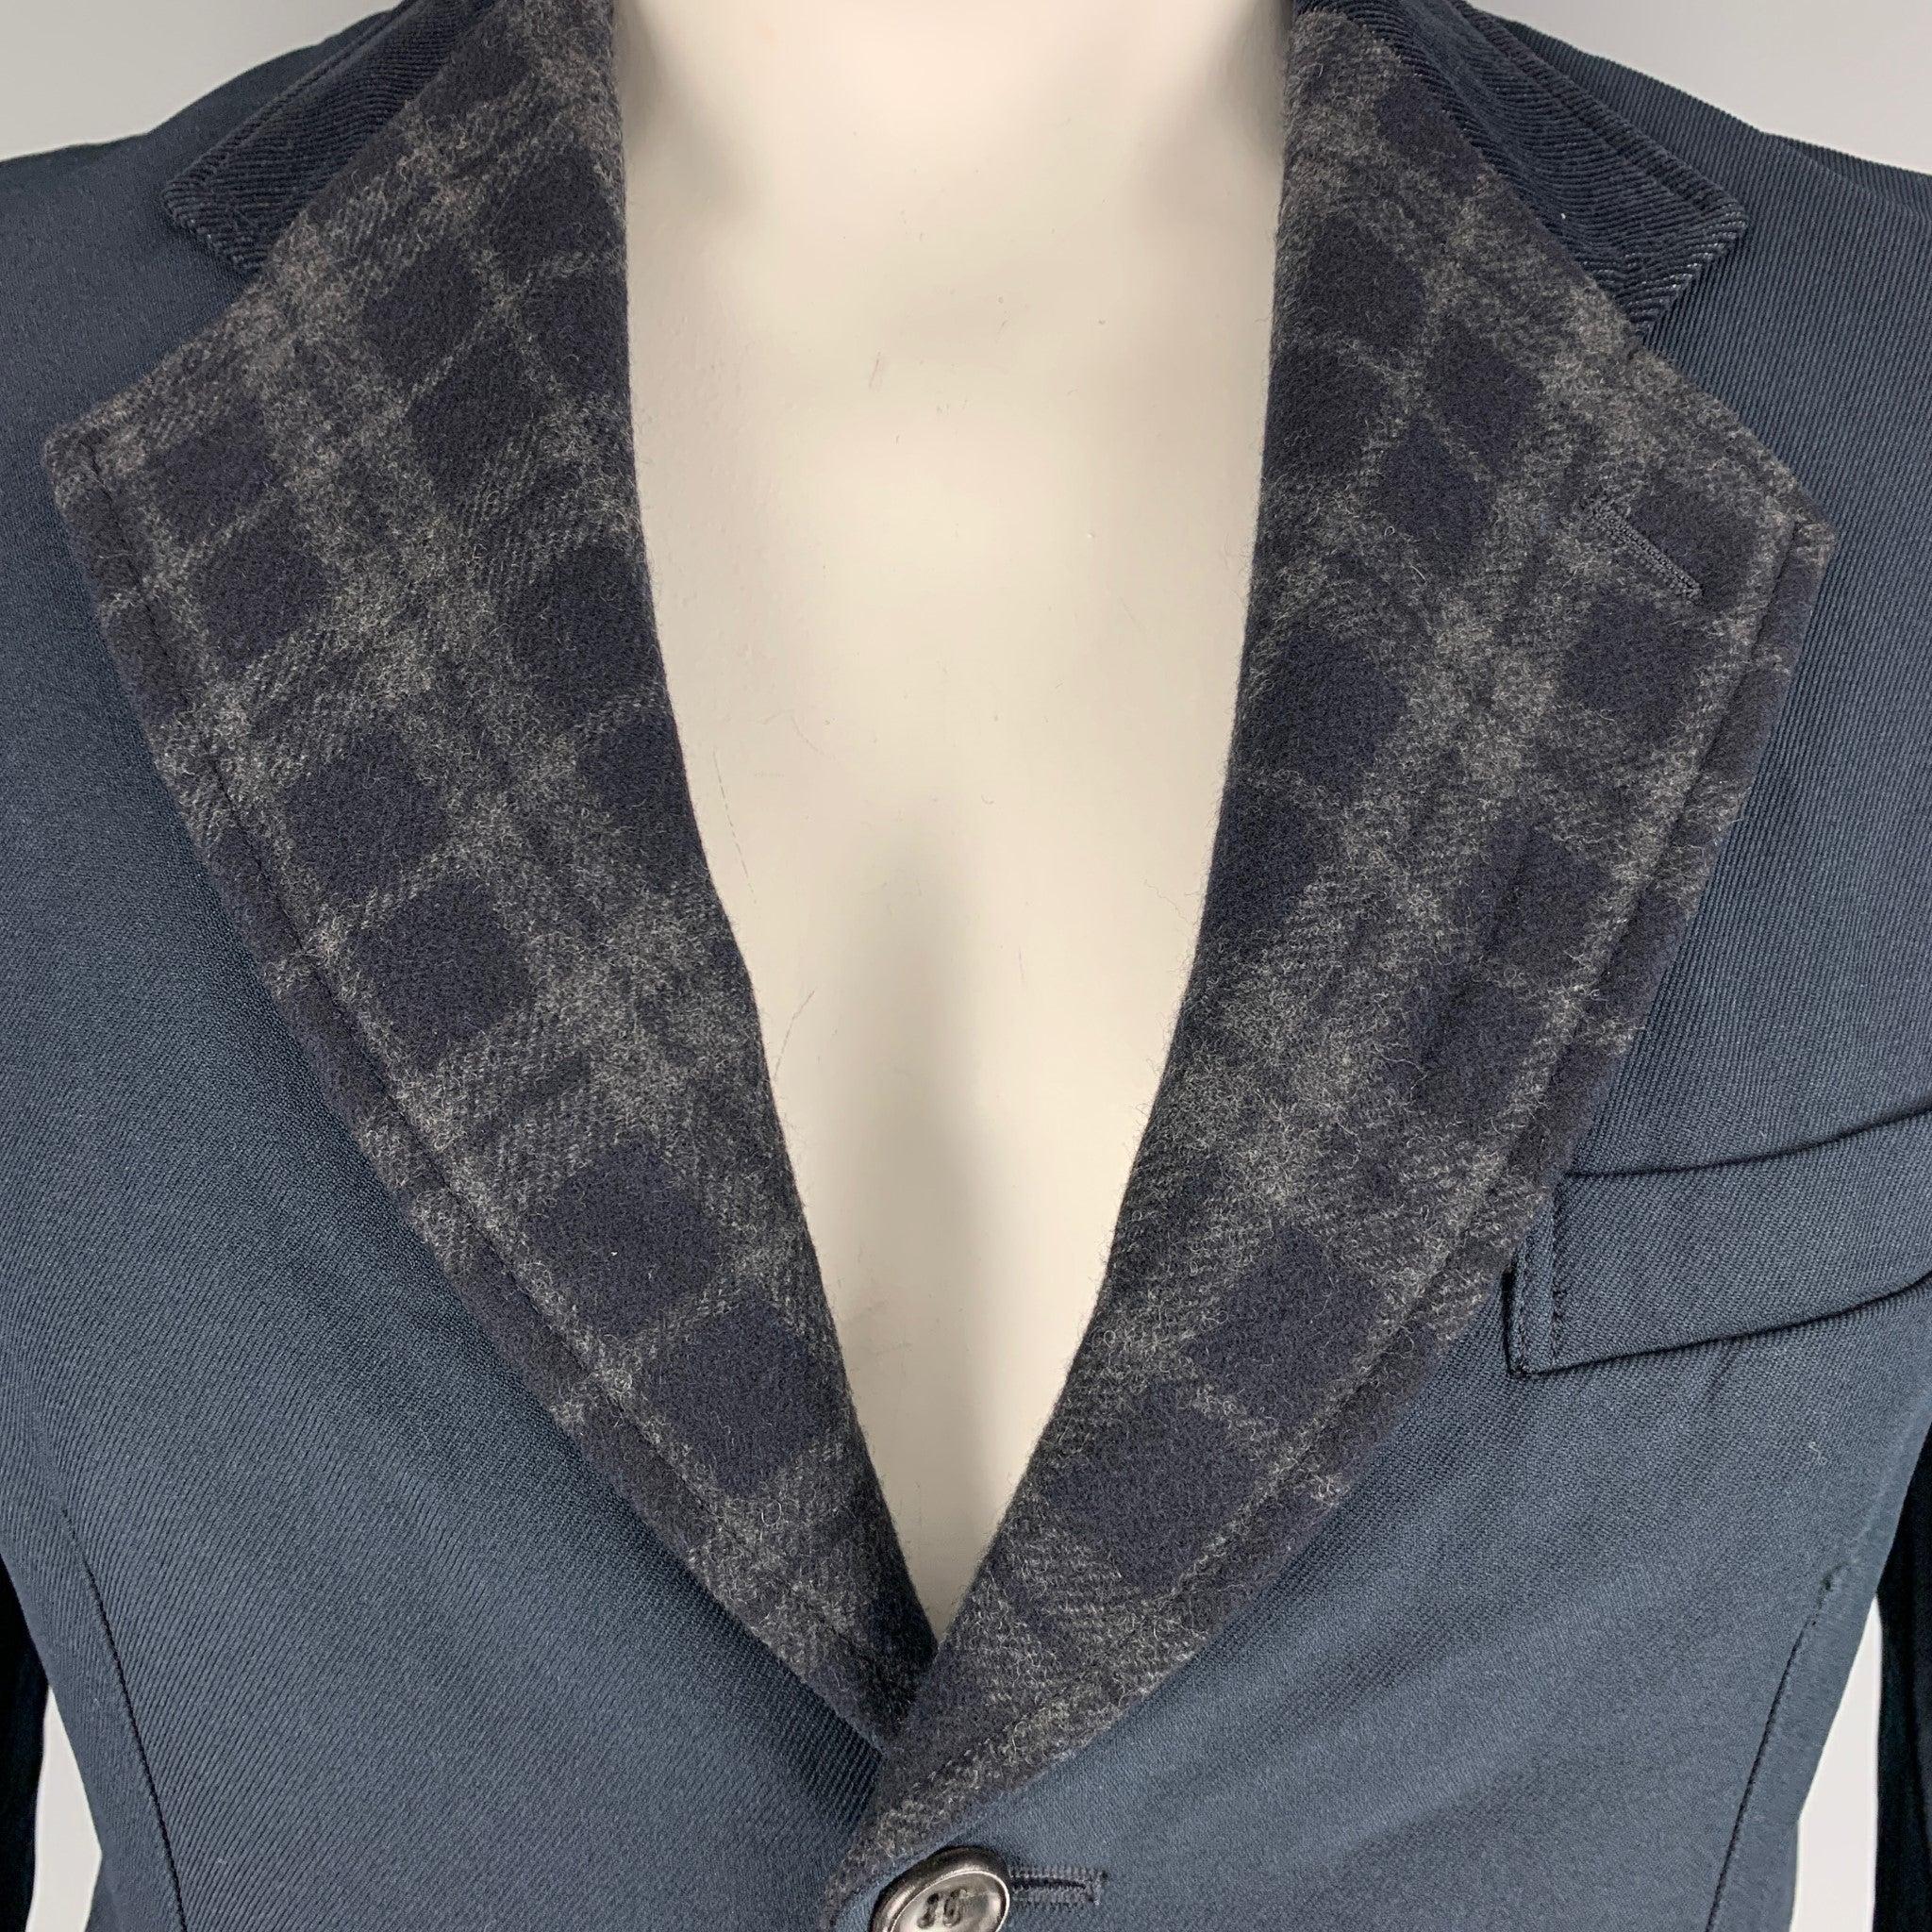 La veste simple poitrine de COMME des GARCONS HOMME, en polyester bleu marine, présente un revers à carreaux et des poches à rabat. Fabriqué au Japon. Excellent état. 

Marqué :   L 

Mesures : 
 
Épaule : 19 pouces Poitrine : 40 pouces Manche : 27